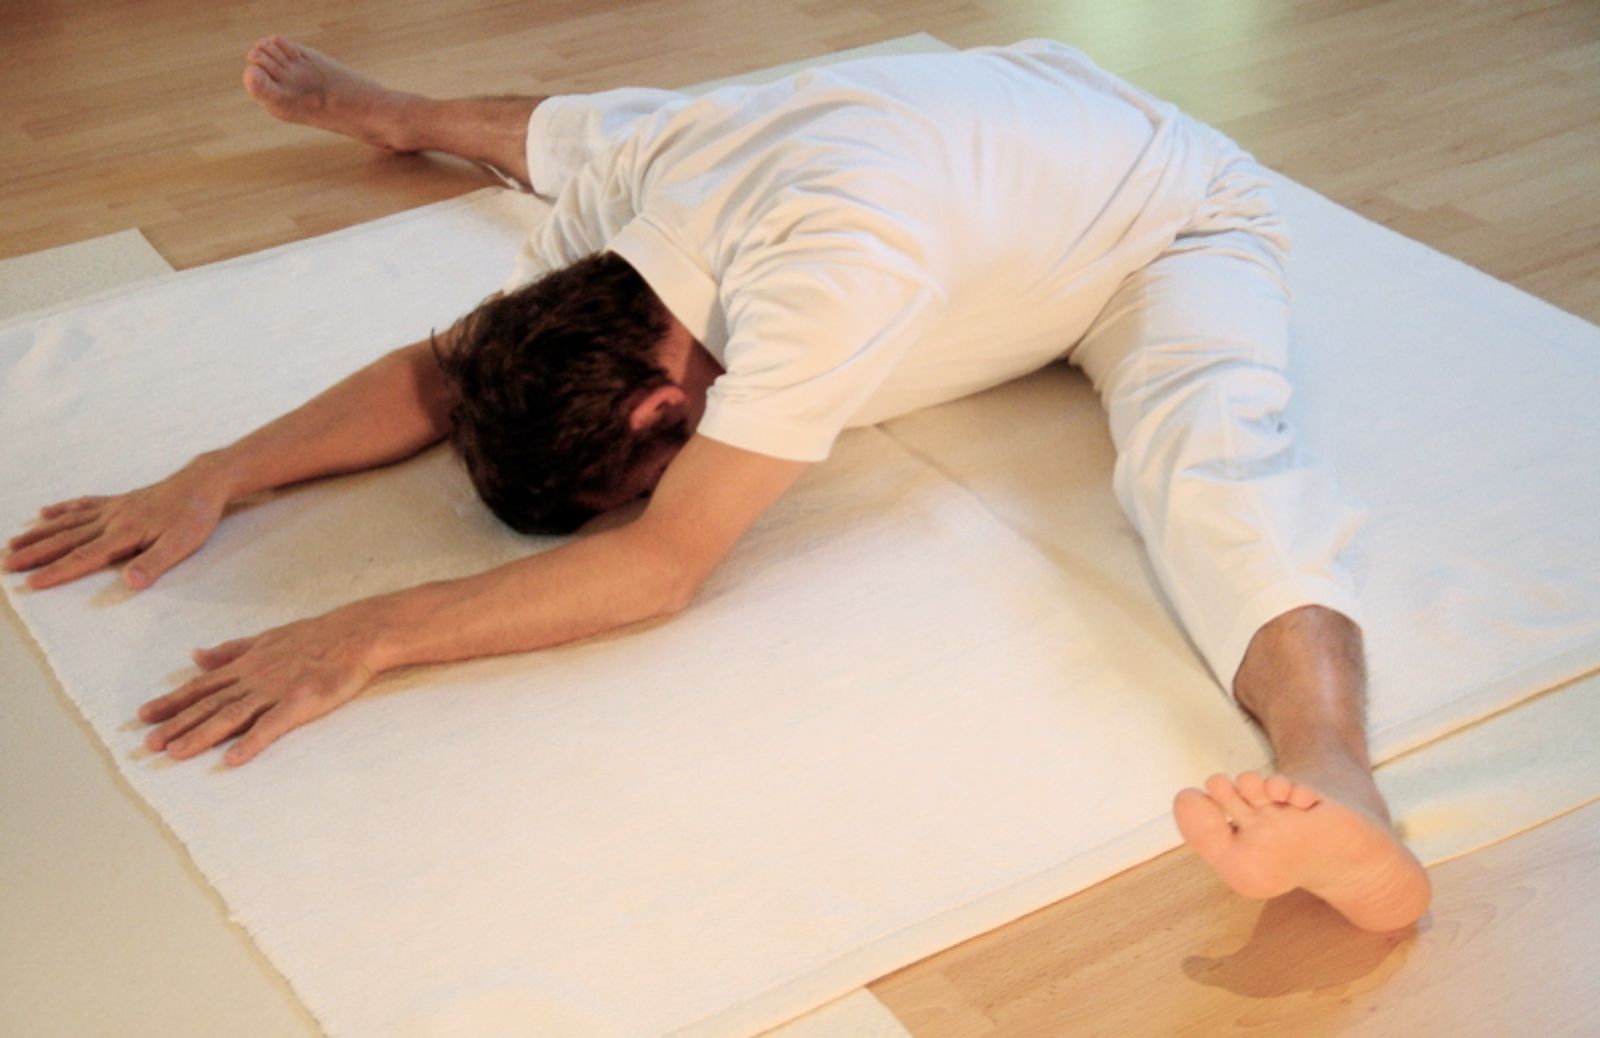 Come imparare a fare yoga: la posizione seduta ad angolo